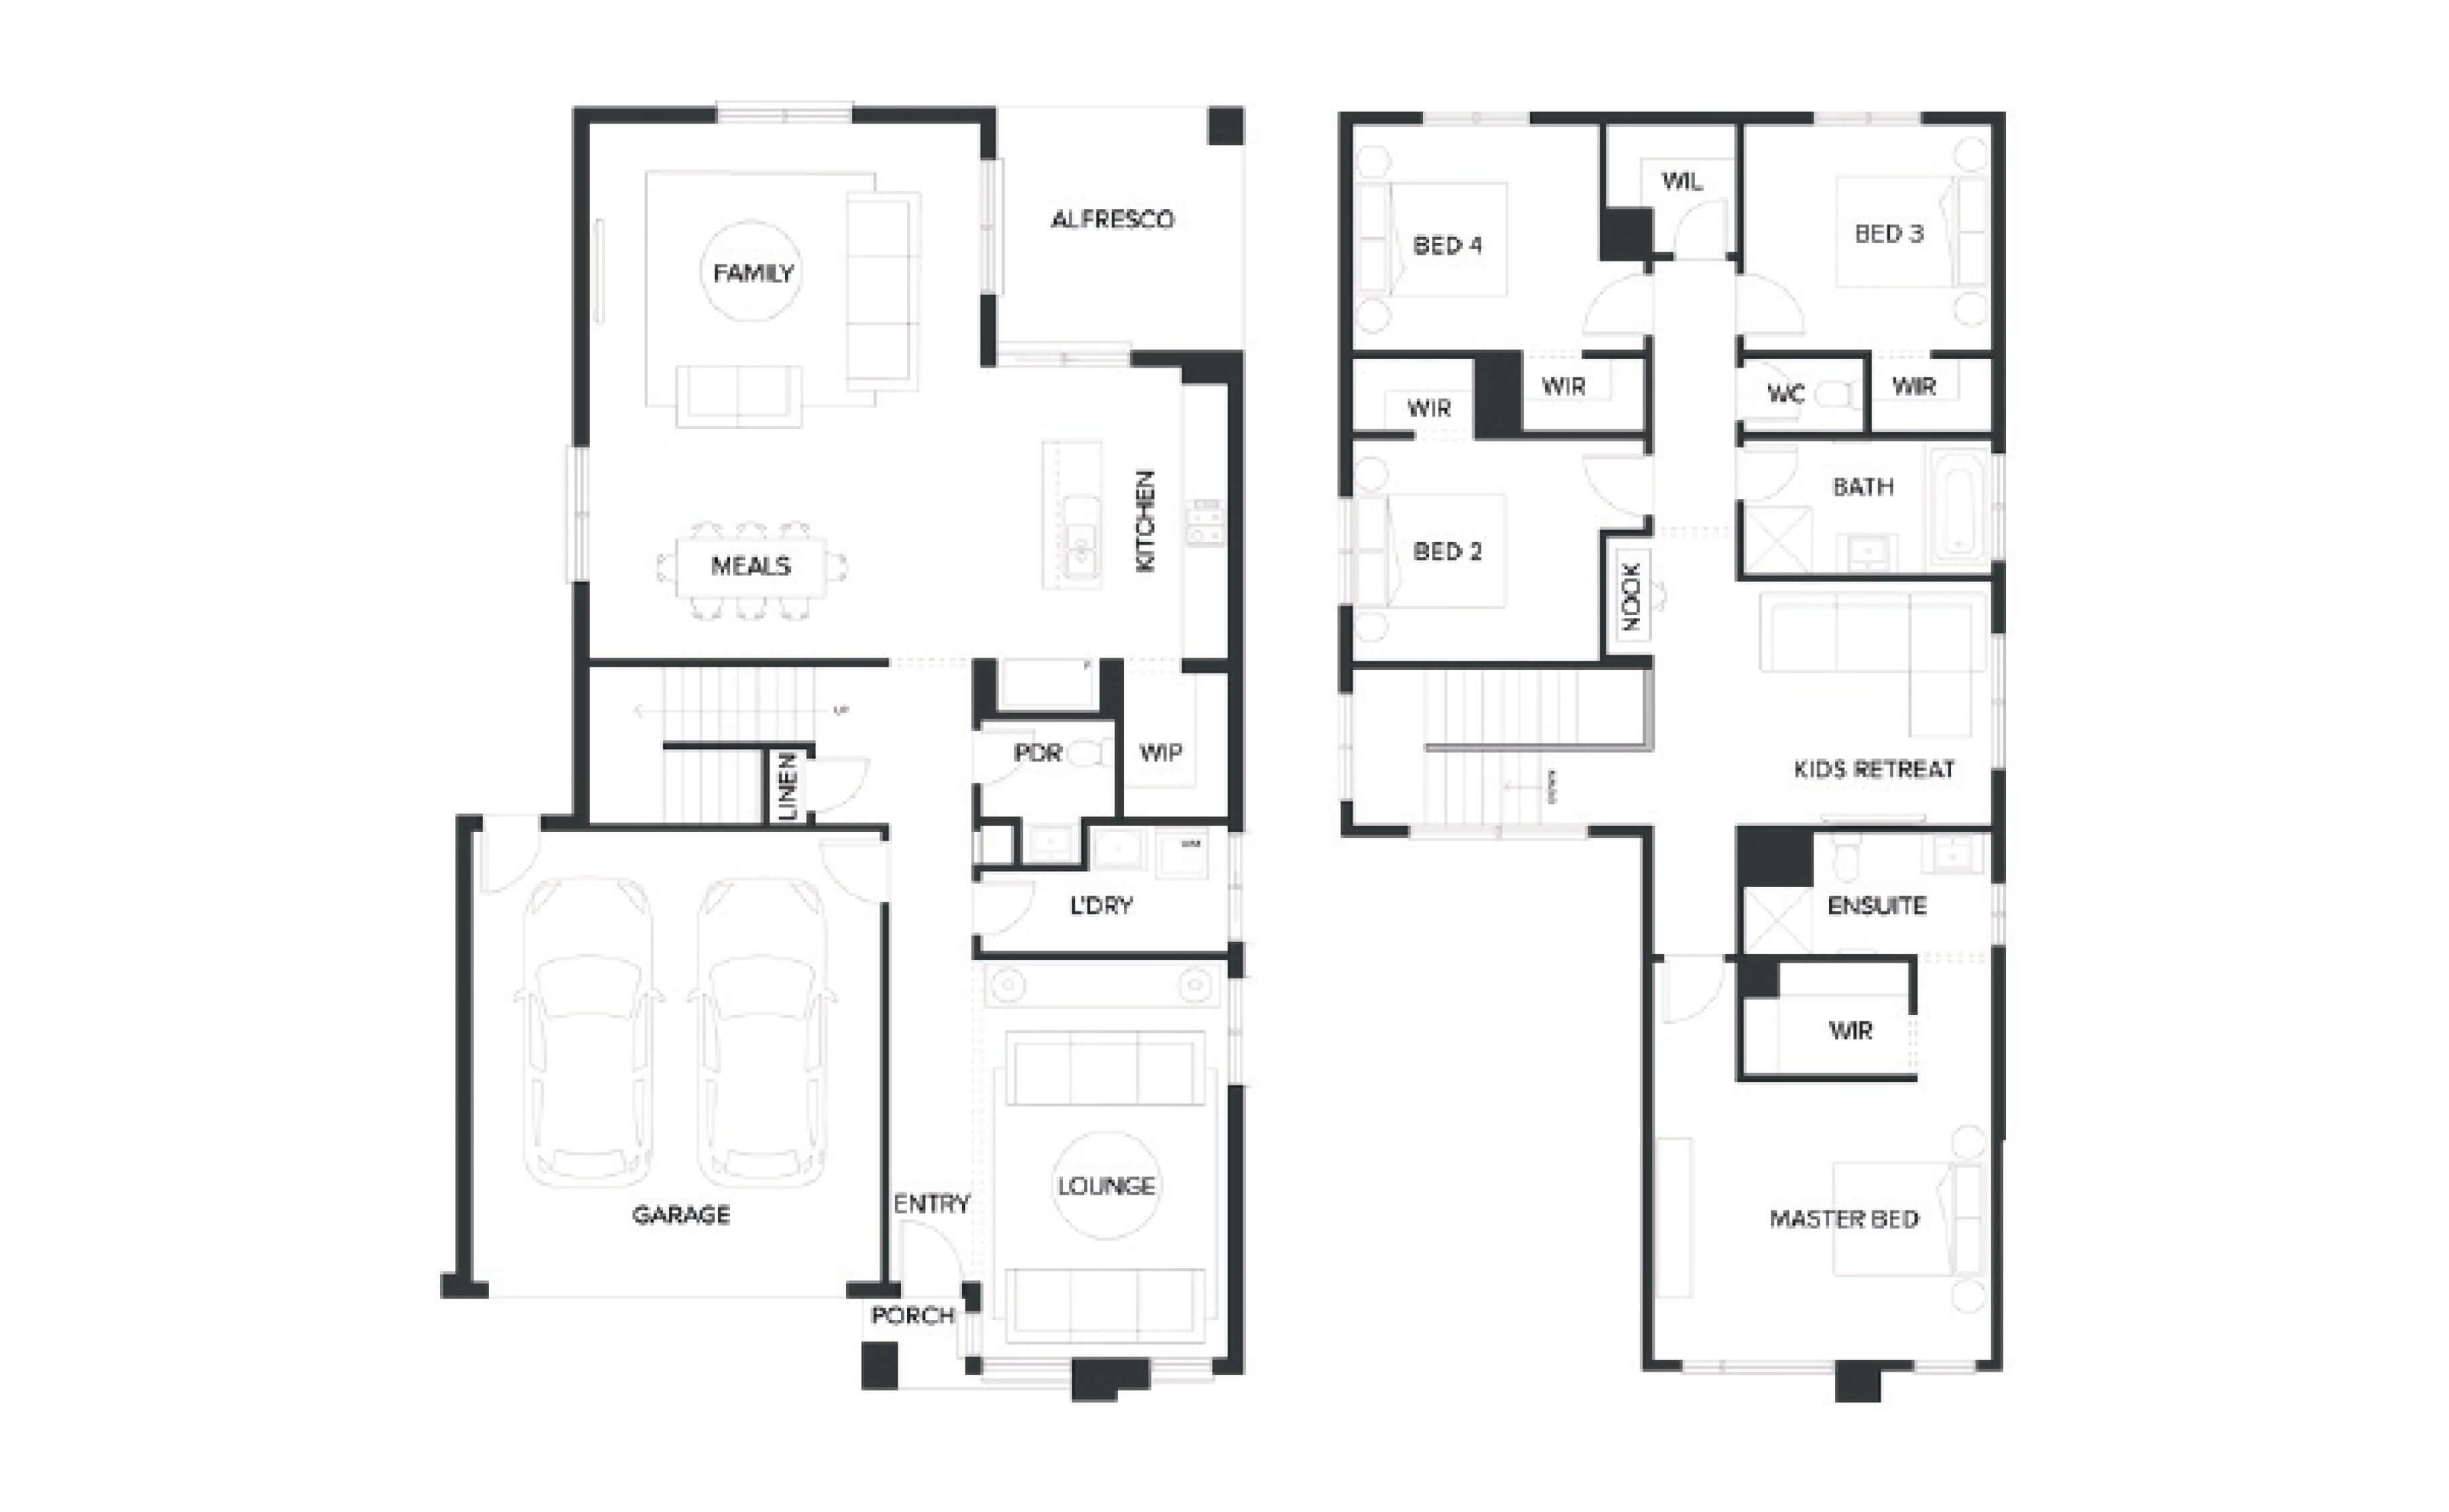 Lot /img/house-land/3016-baltimore/Floorplan/Thumb.jpg floorplan